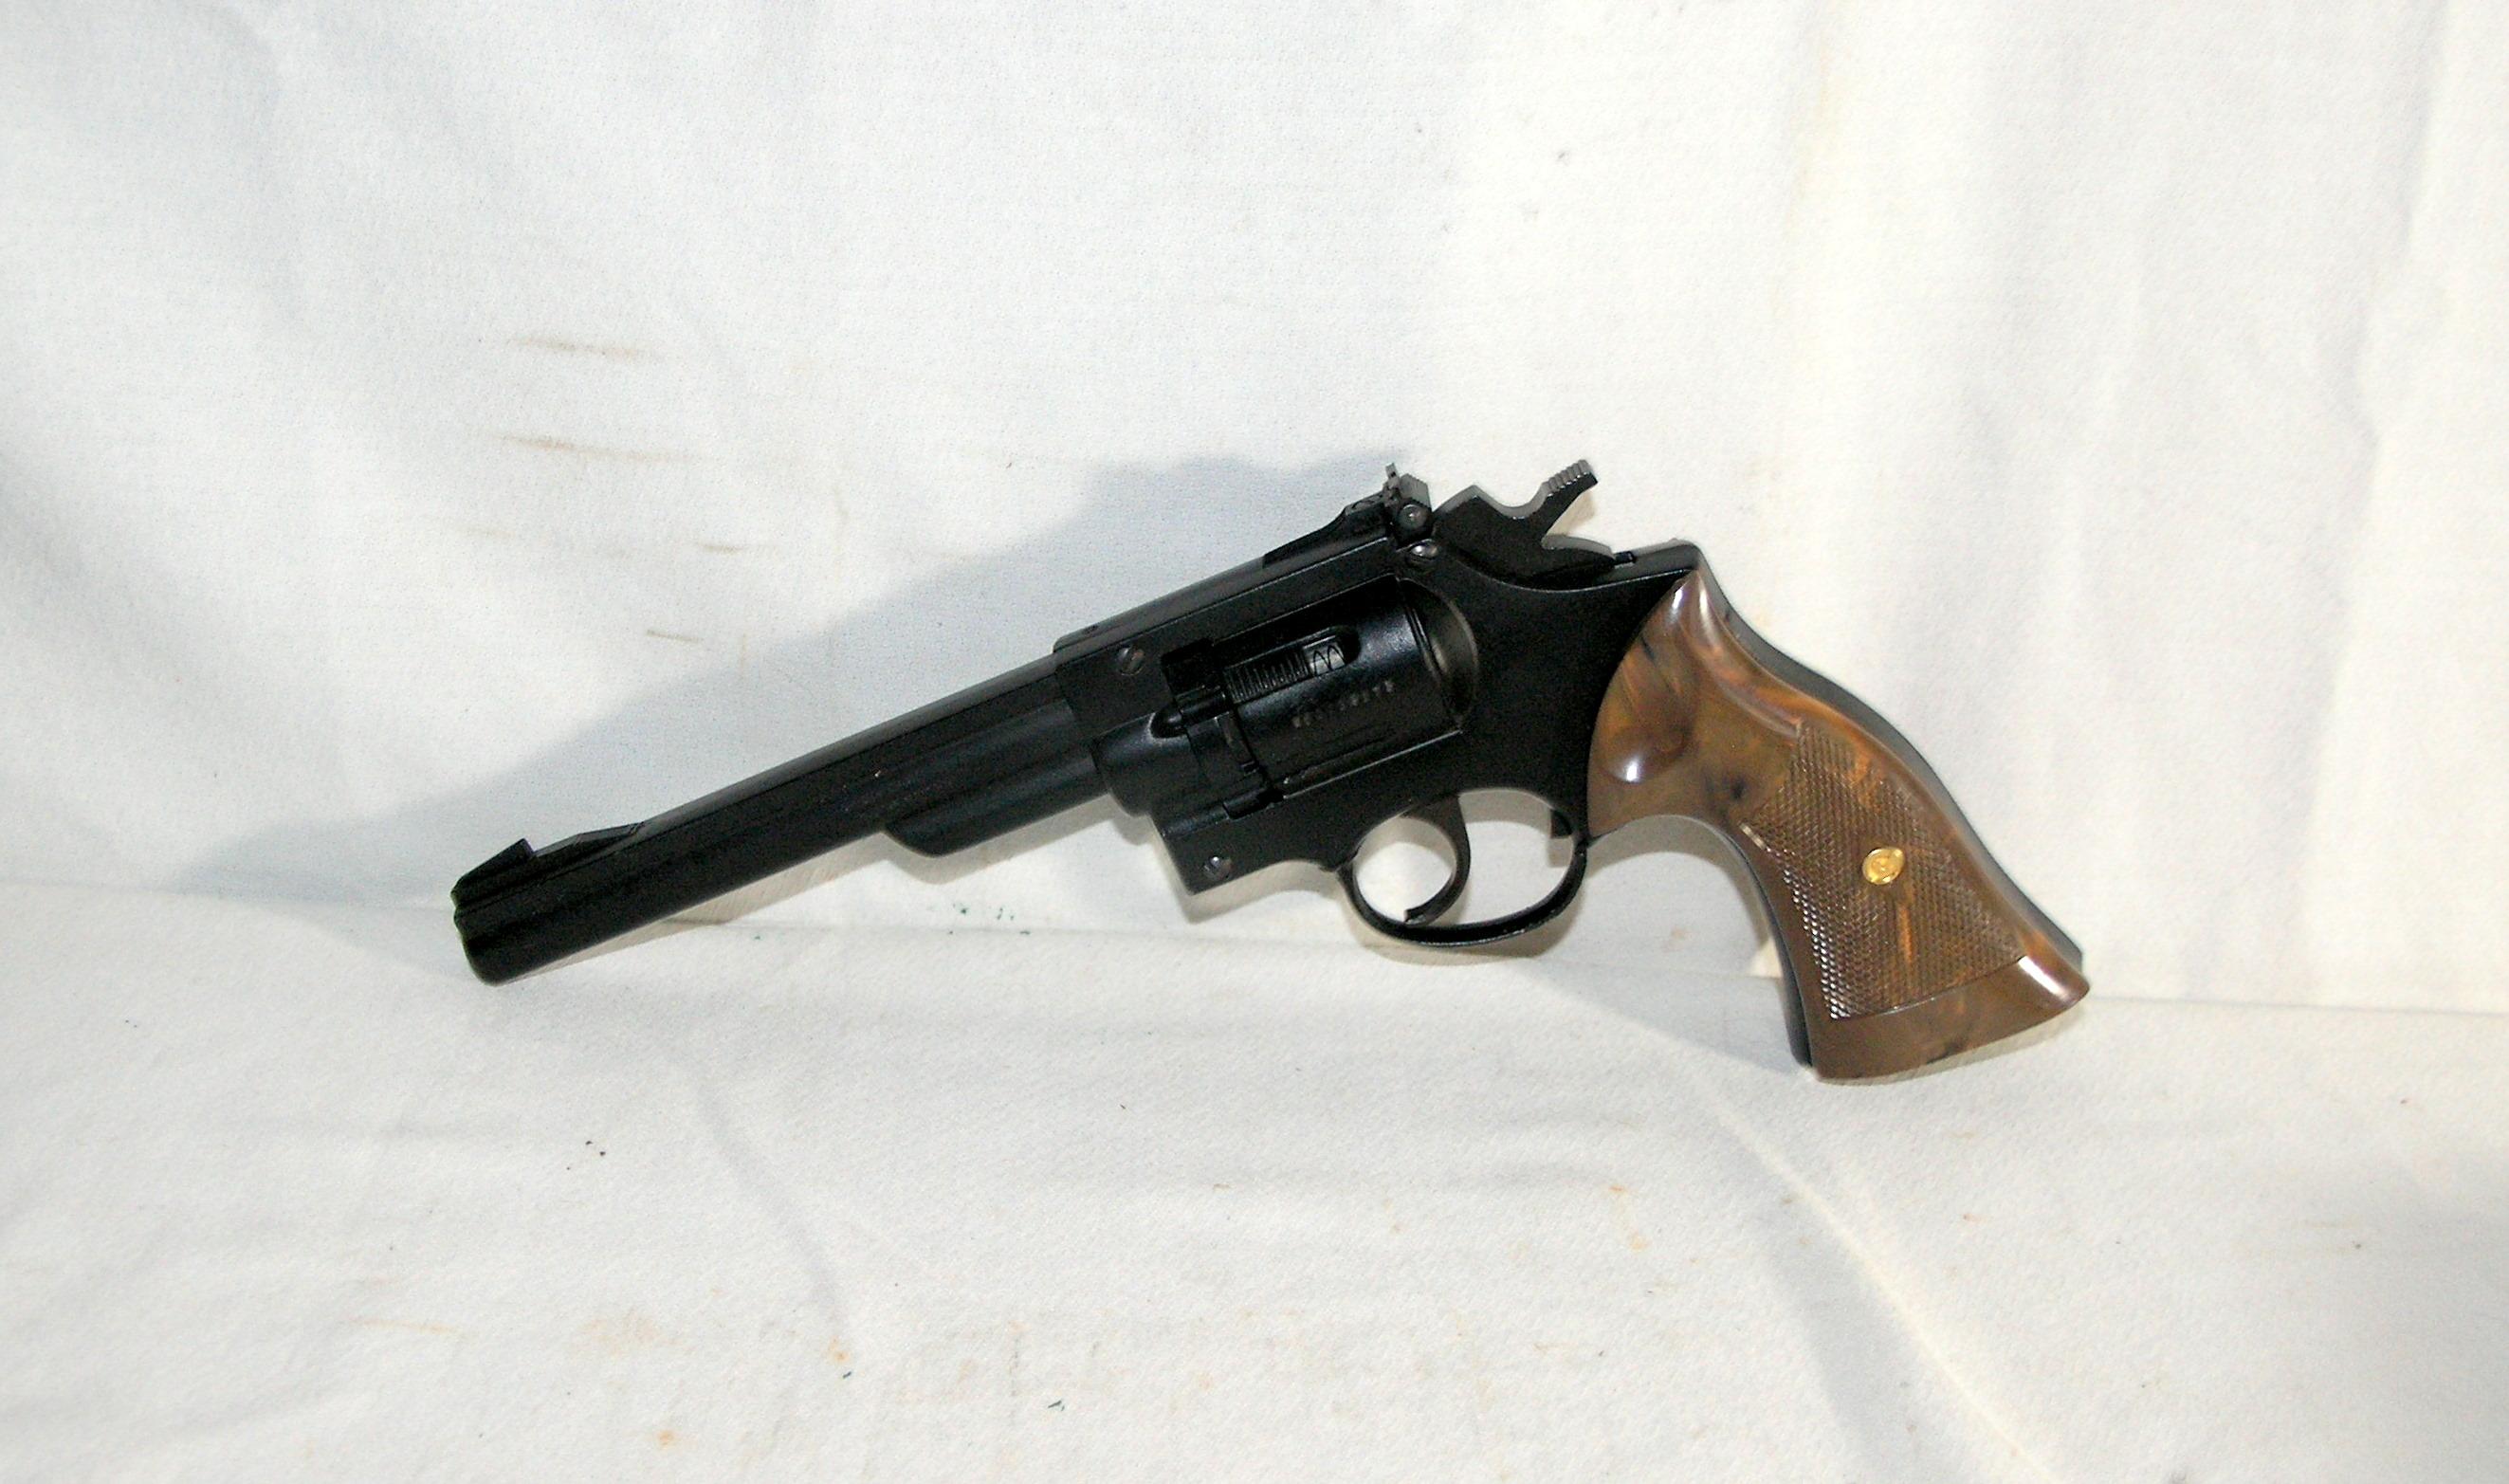 Crossman Model -38T 177 Caliber Pellet Pistol in Hard Case. With Pellets an